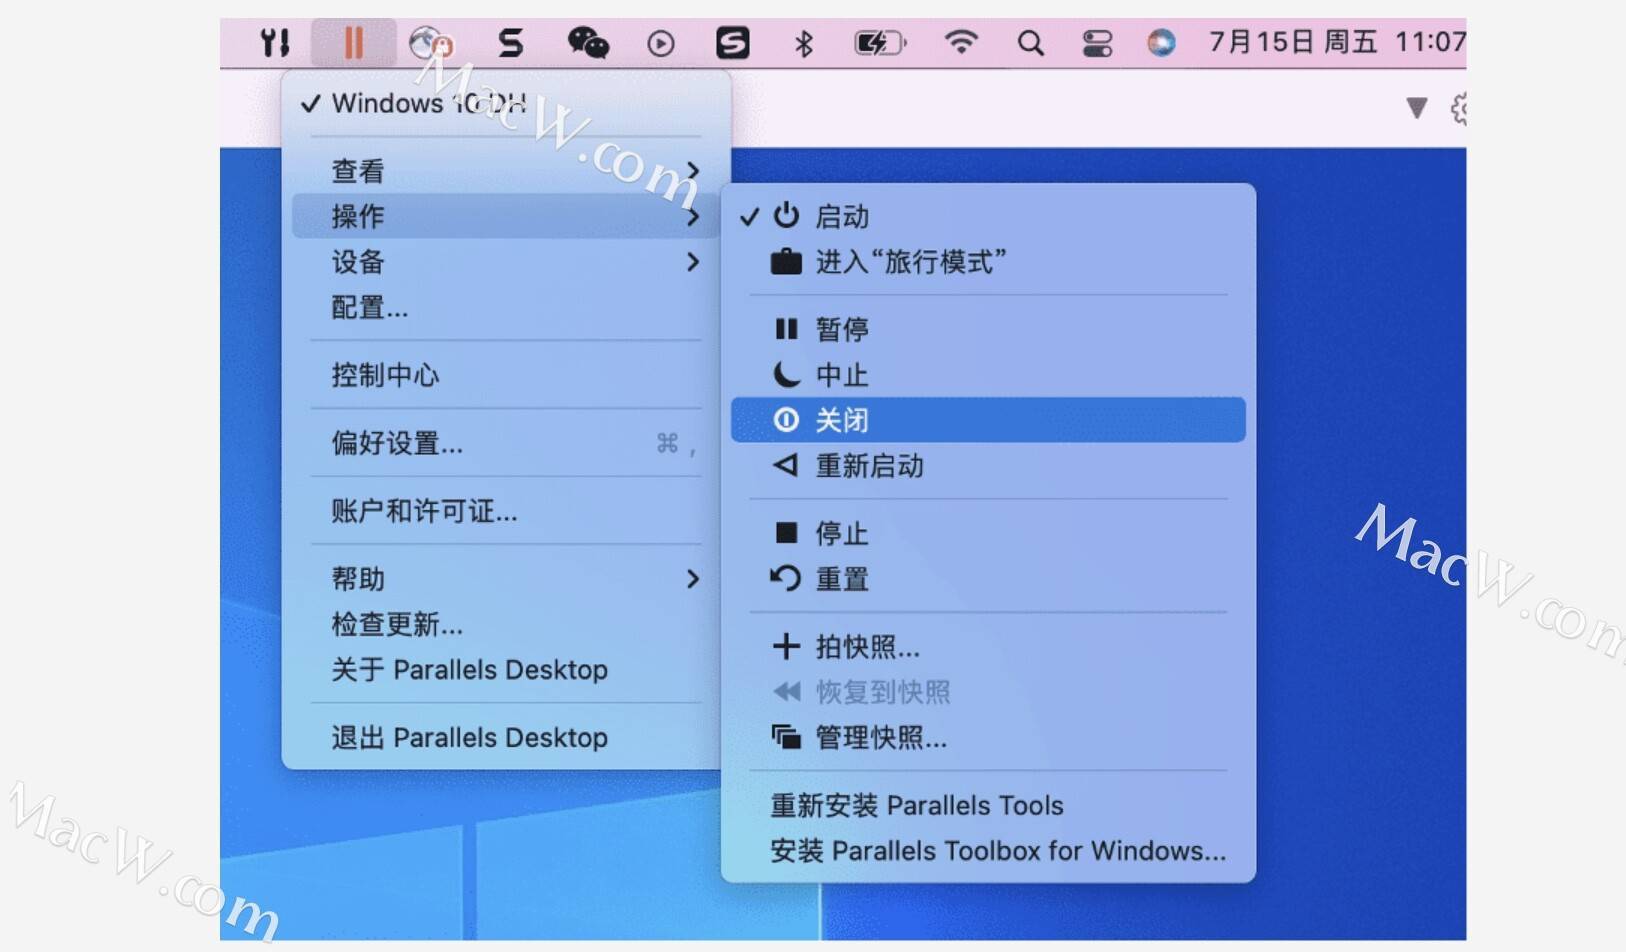 华为手机进程已停止运行:Parallels Desktop 虚拟机关闭、停止、中止和暂停操作的区别